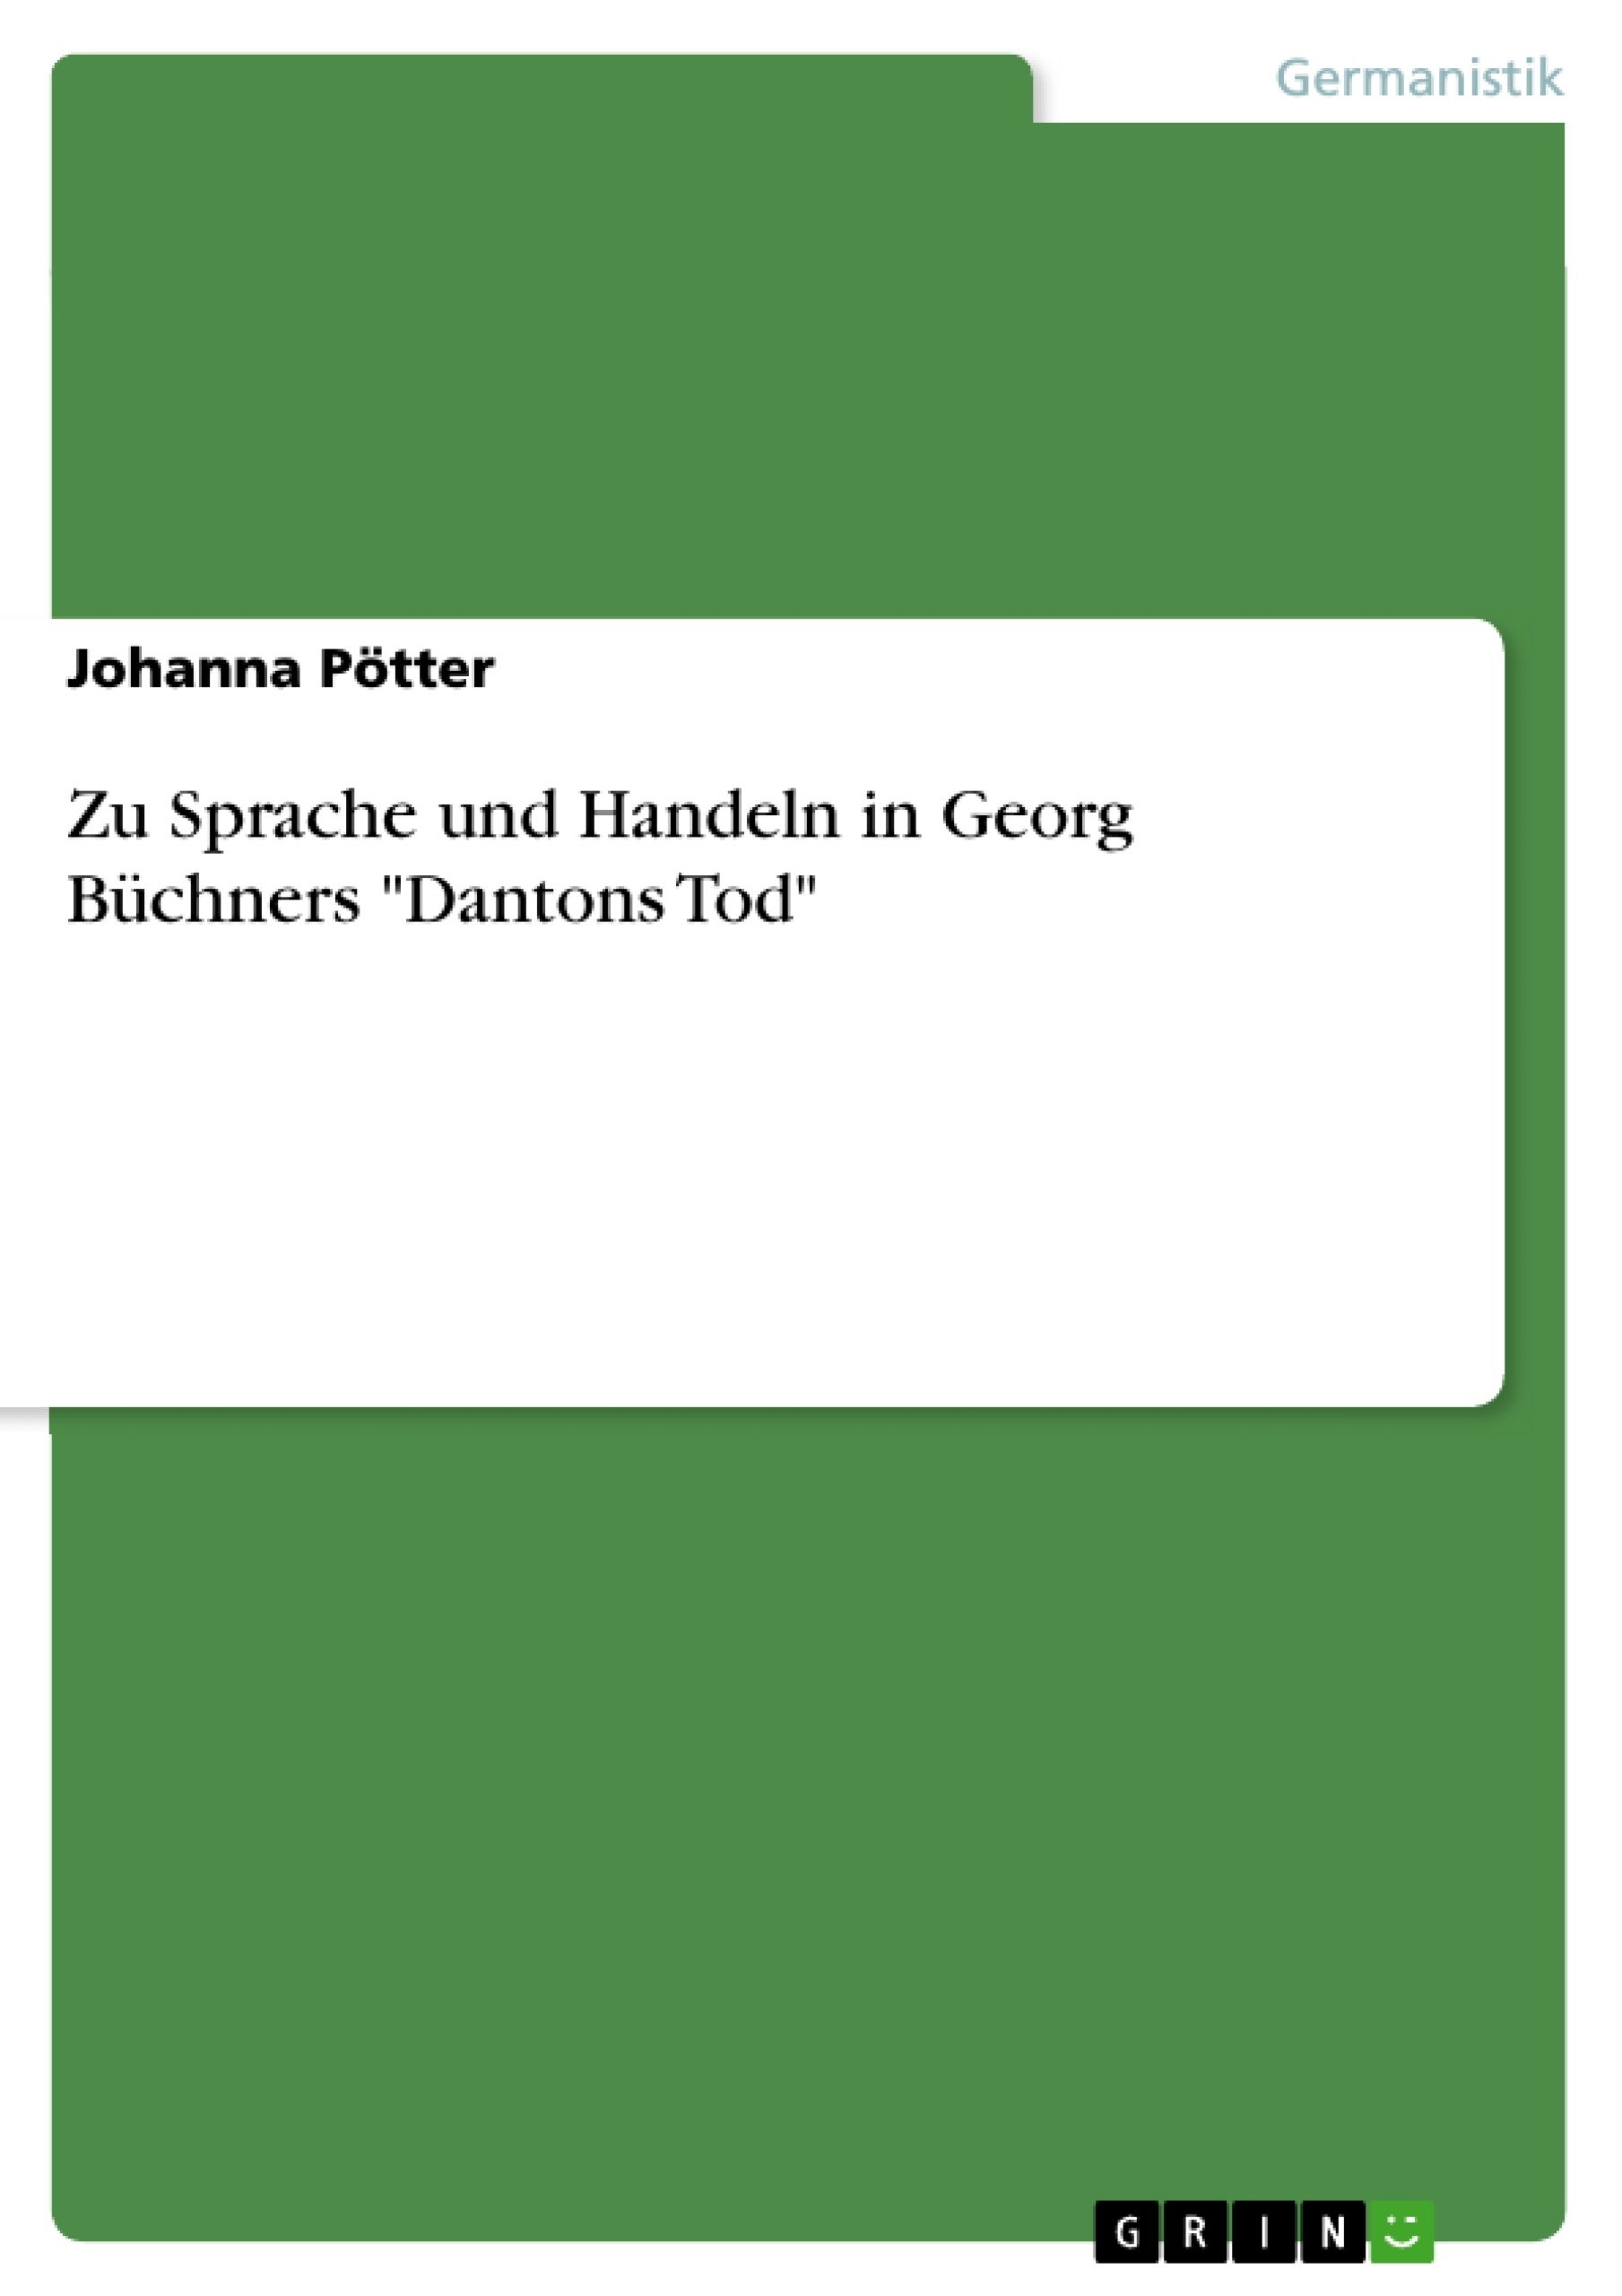 Título: Zu Sprache und Handeln in Georg Büchners "Dantons Tod"